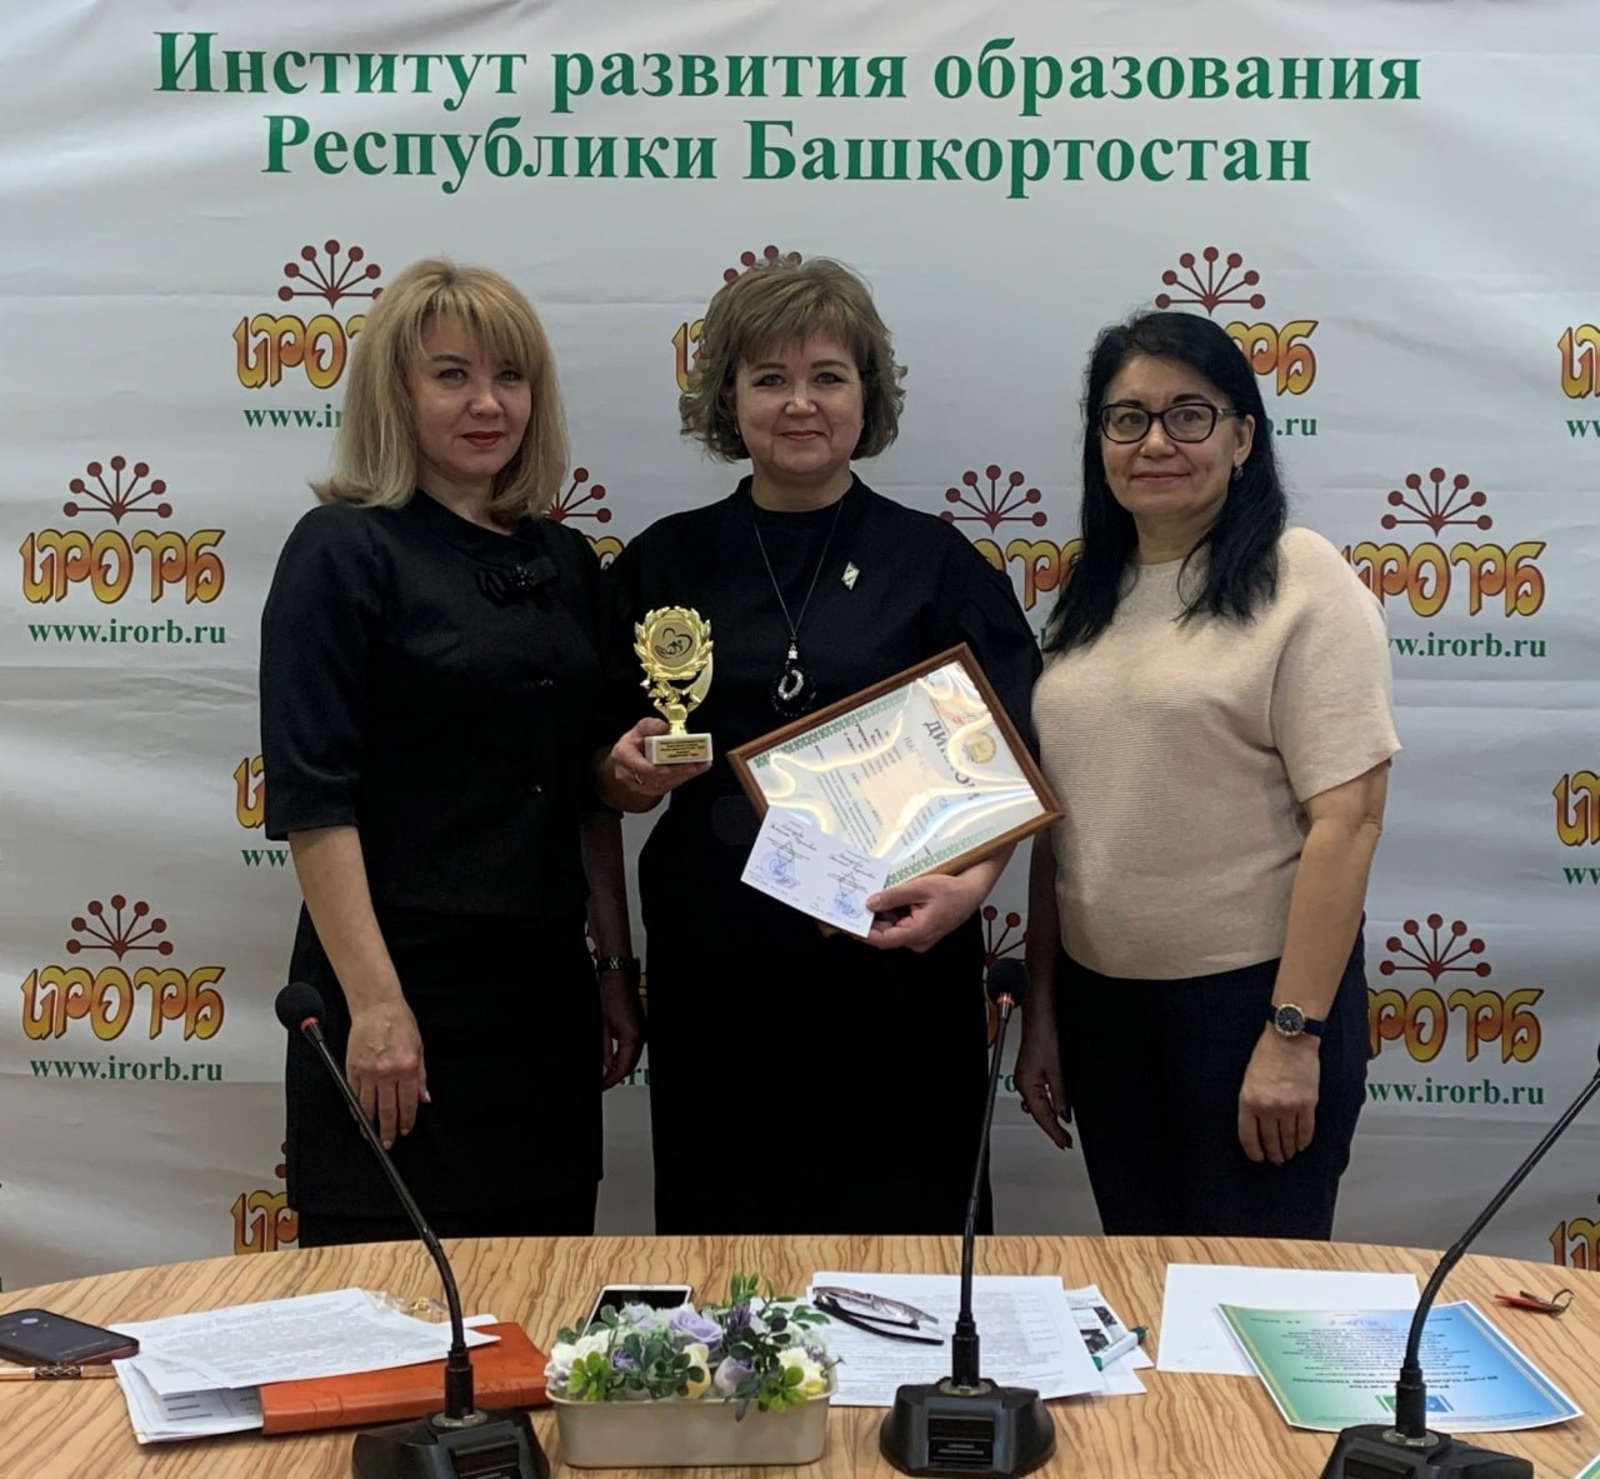 Светлана Мансурова стала победителем Регионального этапа Всероссийского конкурса в номинации «Дефектолог года»!